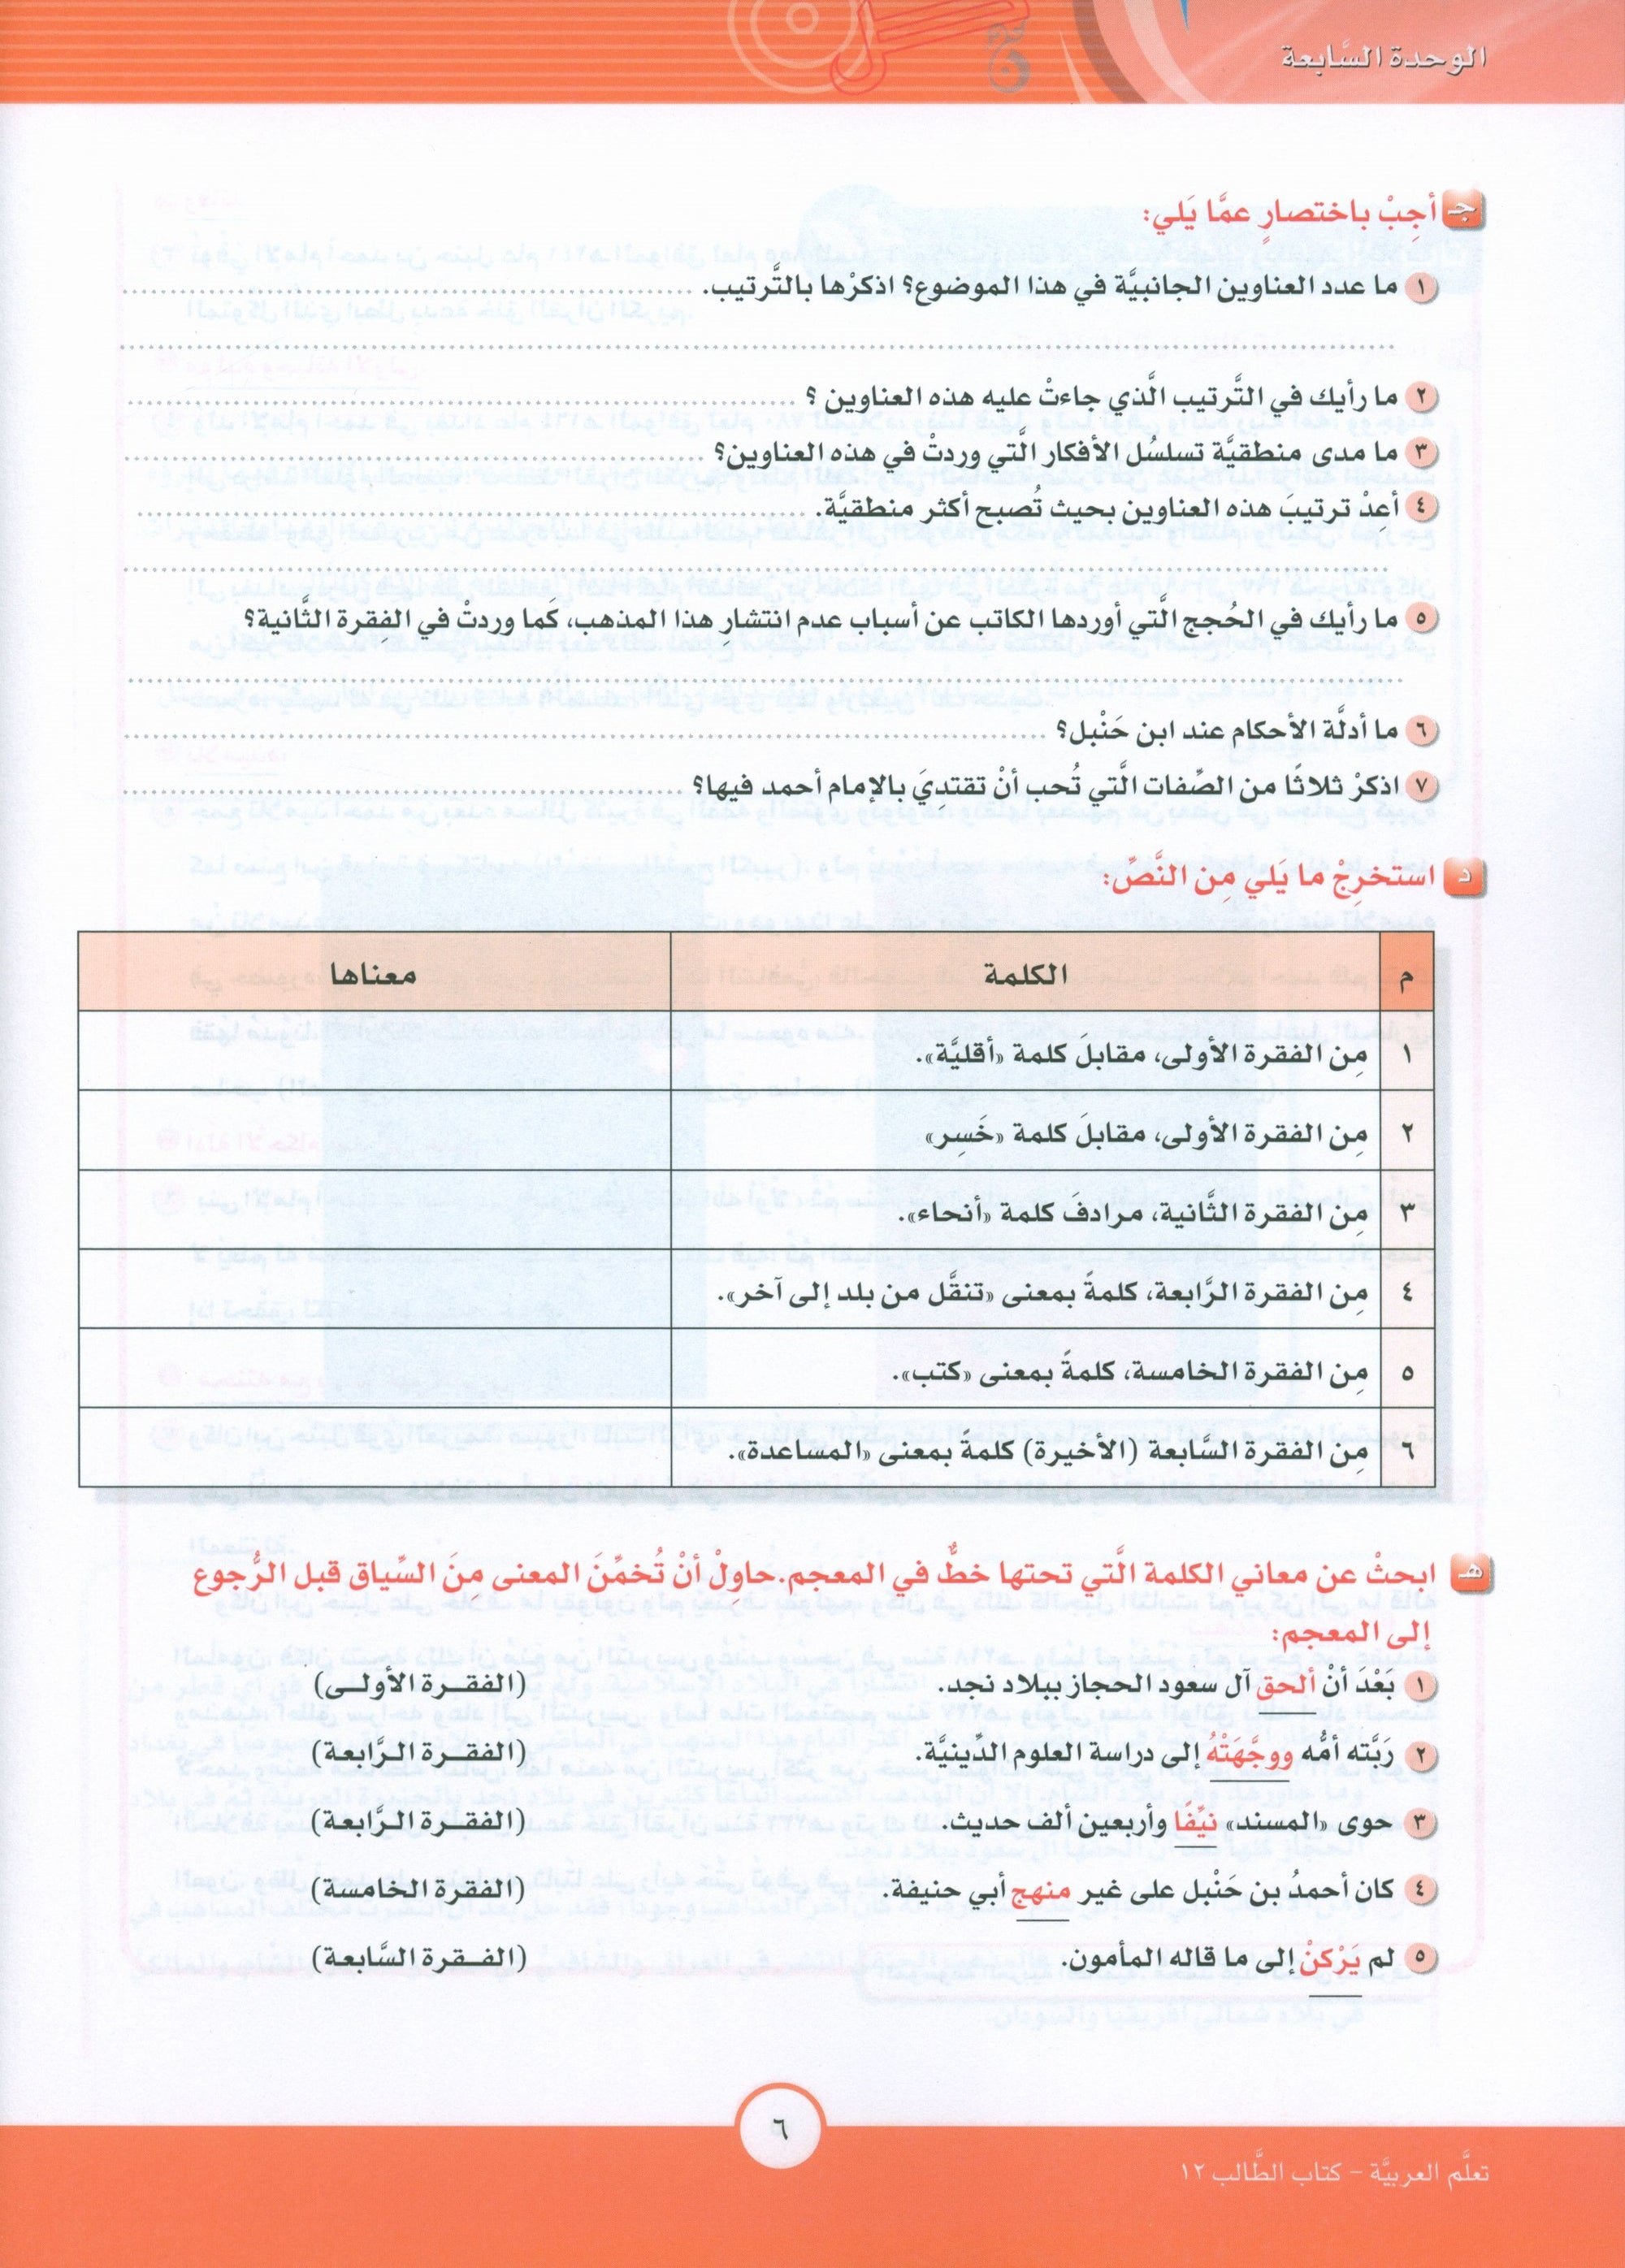 ICO Learn Arabic Textbook Level 12 Part 2 تعلم العربية كتاب التلميذ